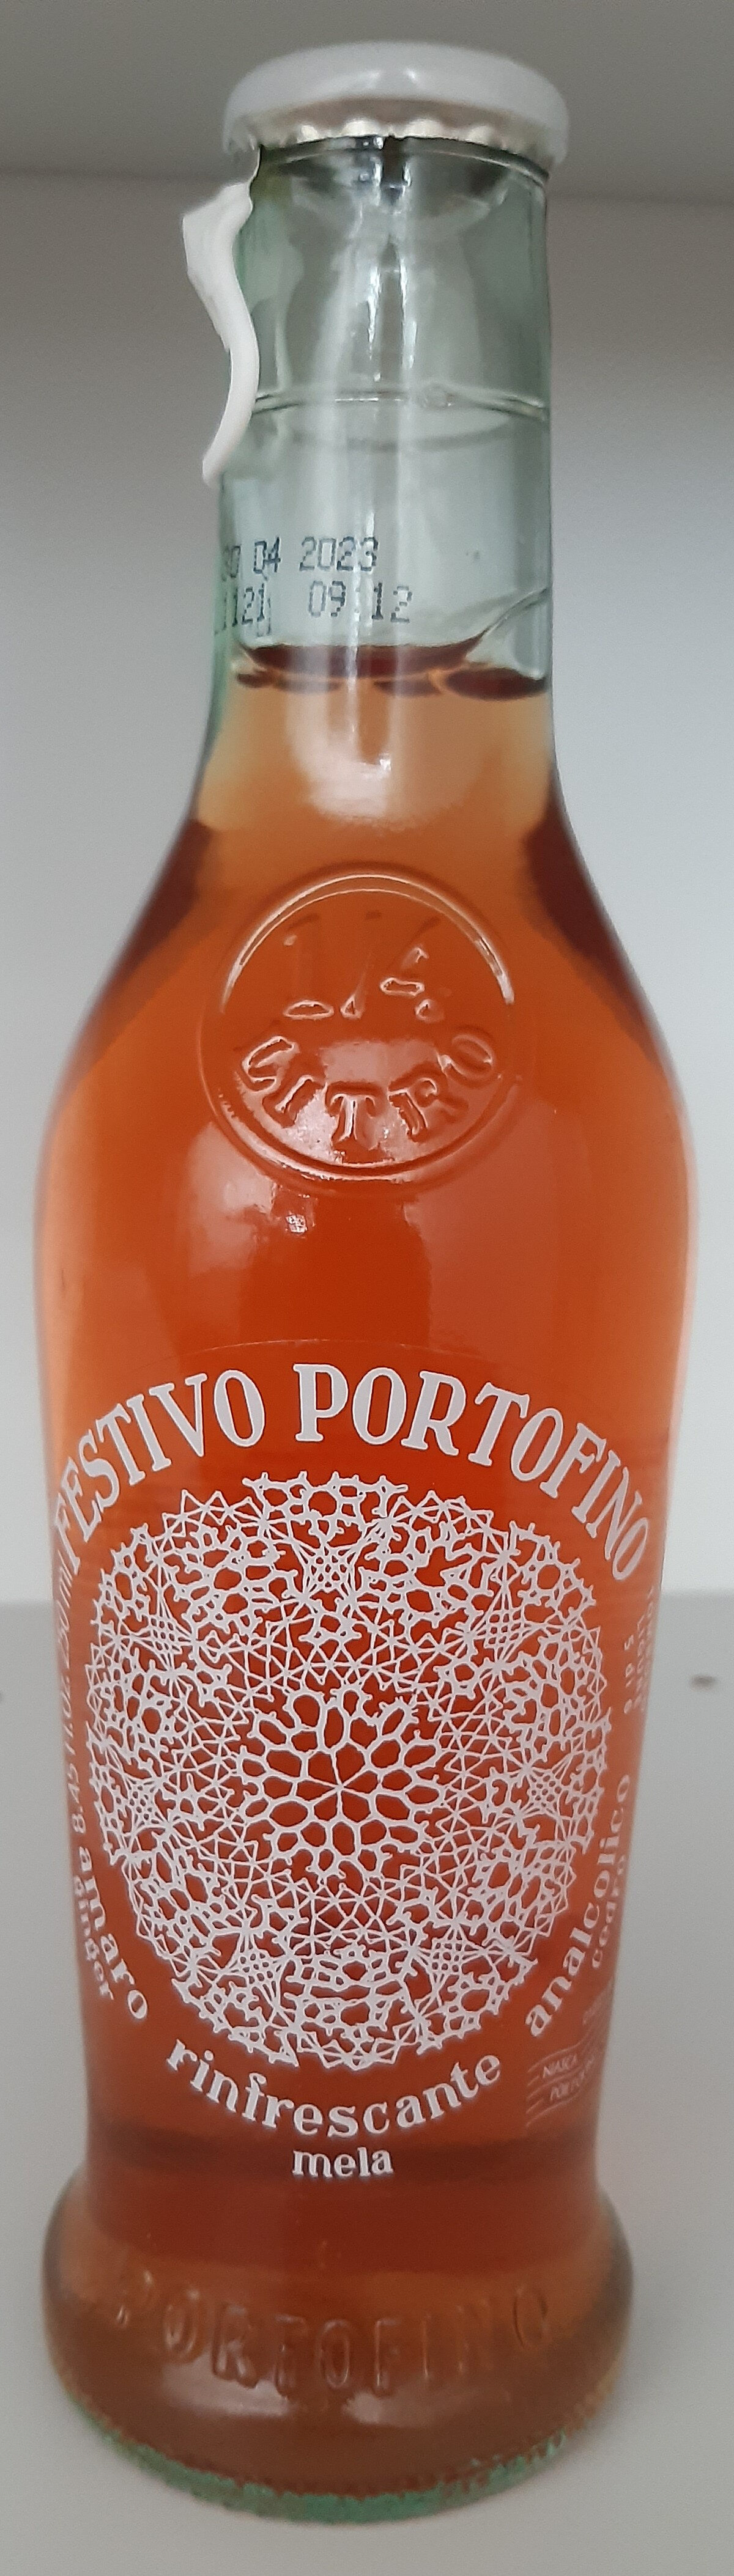 Festivo Portofino - Prodotto